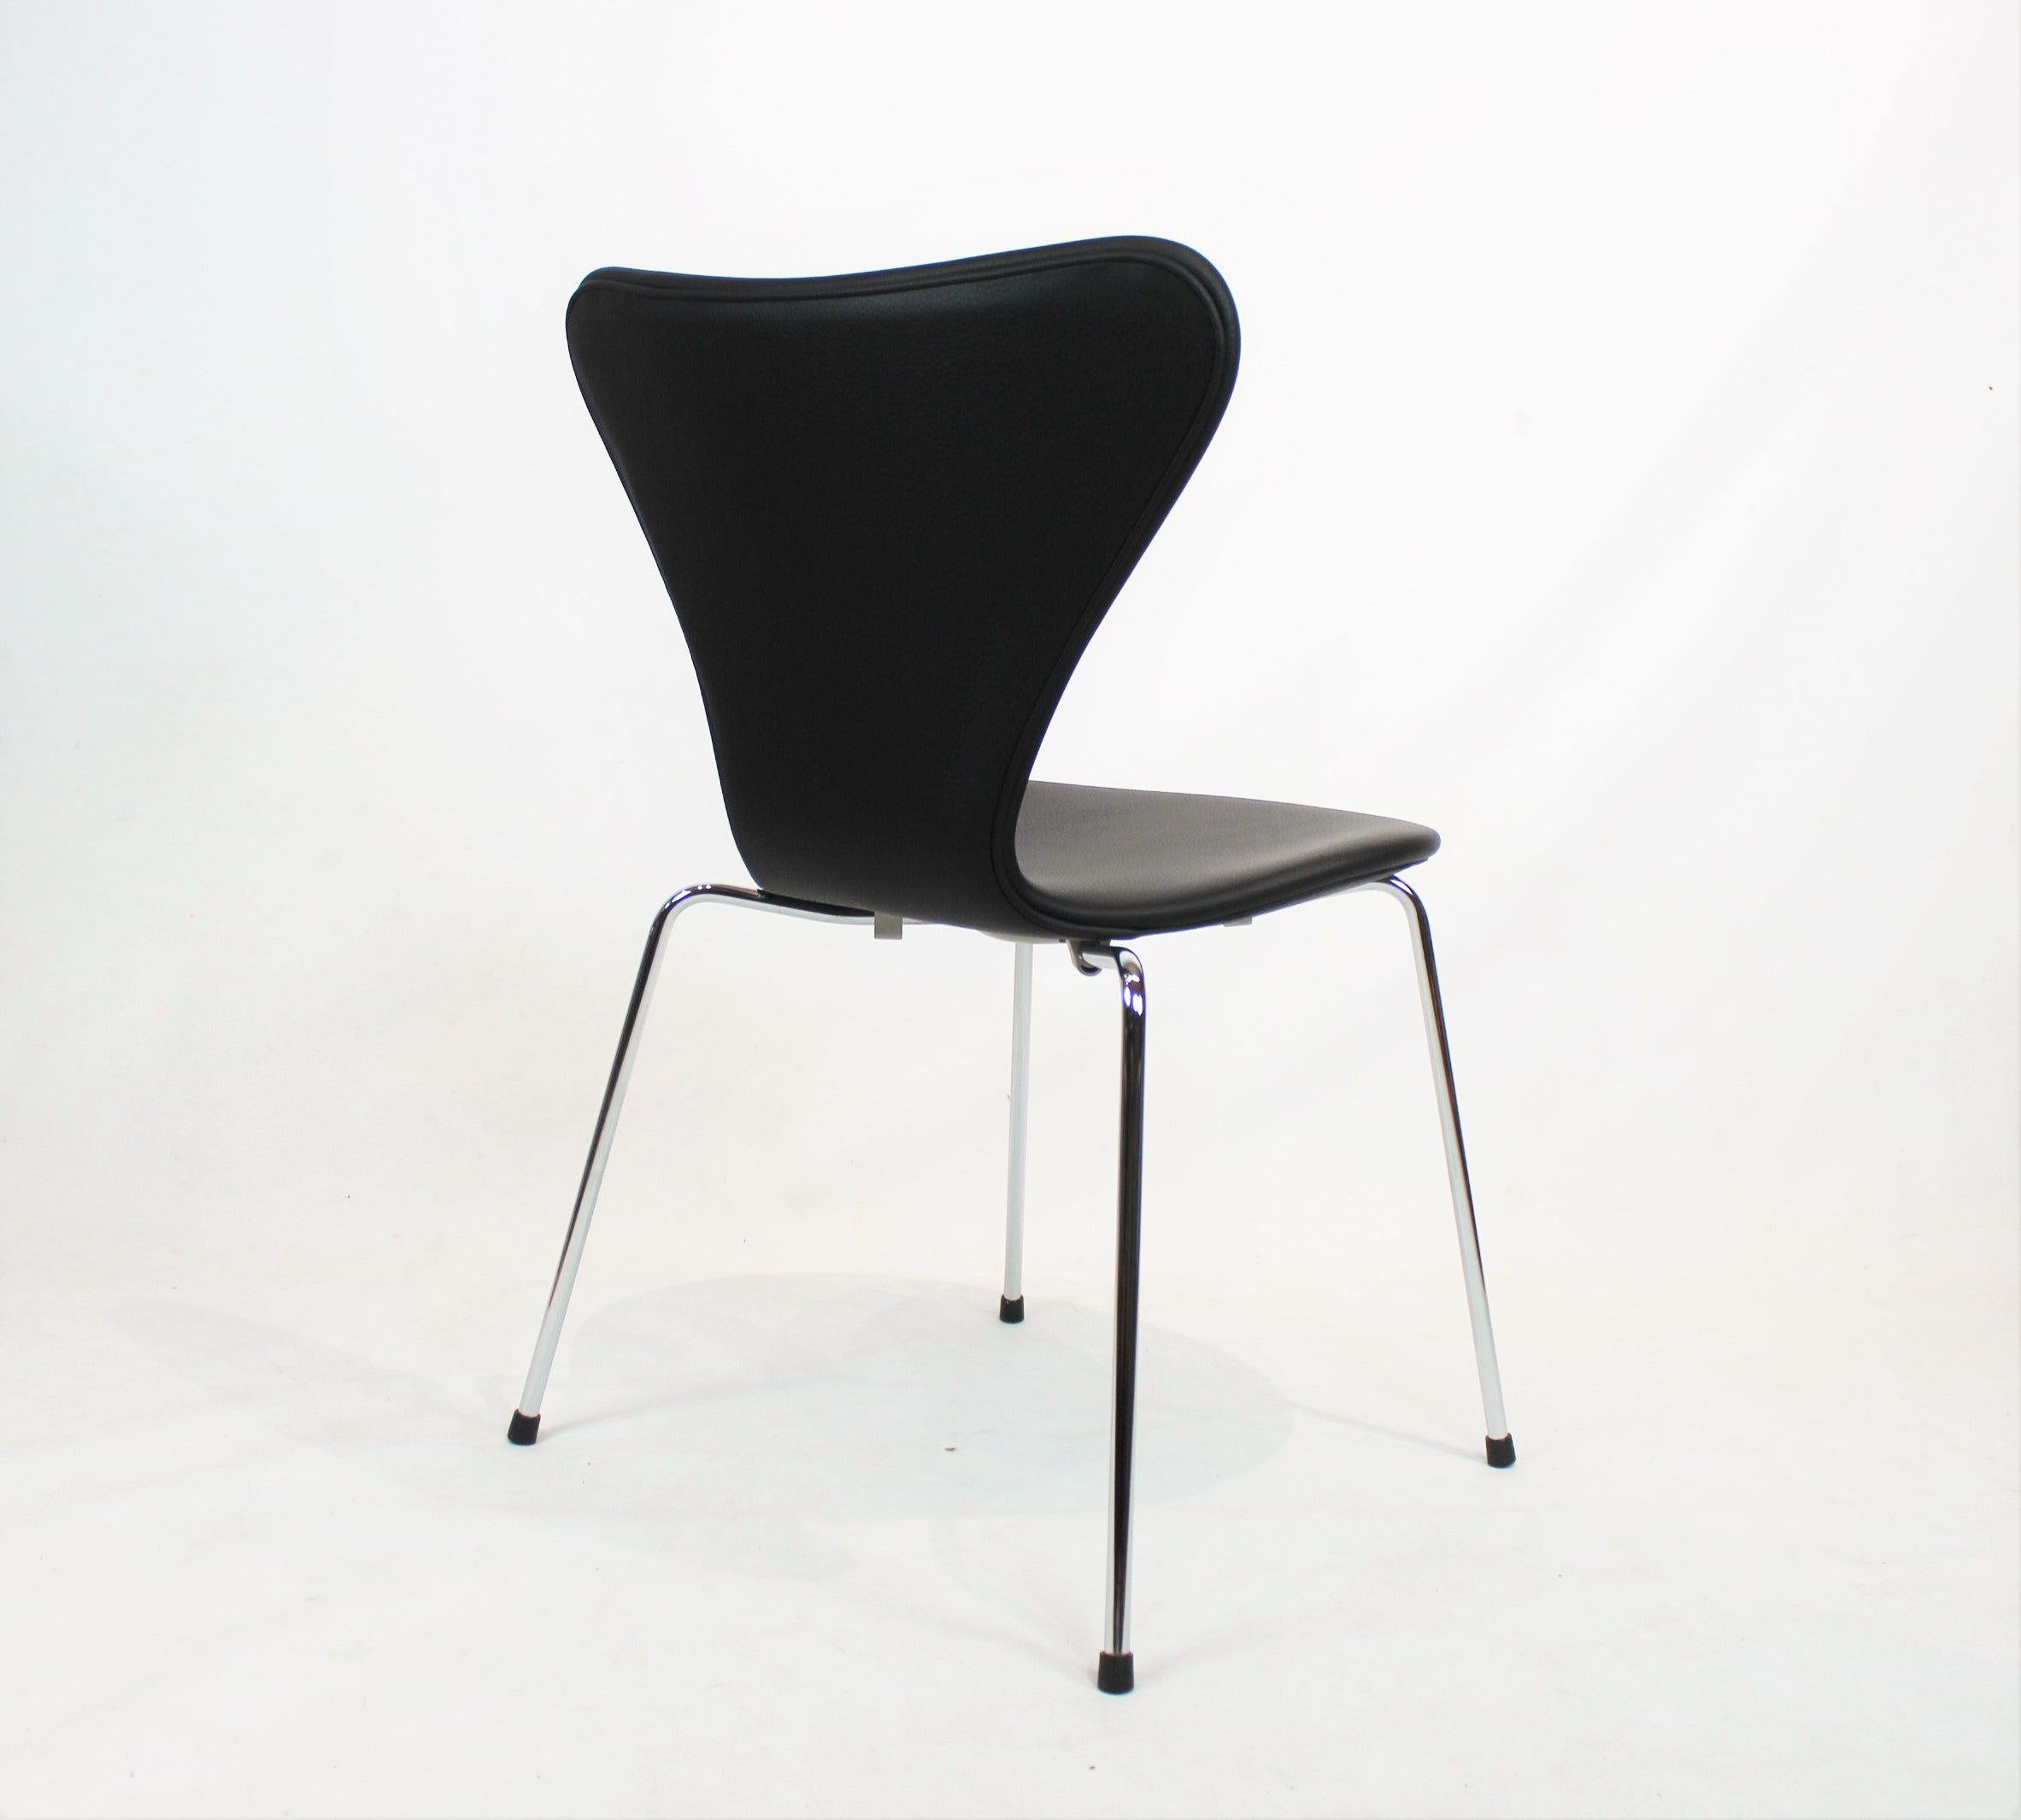 xpérimentez un véritable classique du design avec la chaise Syver, modèle 3207, avec accoudoirs, conçue par le légendaire Arne Jacobsen en 1955 et fabriquée à la main par Fritz Hansen. Cette chaise emblématique est l'expression de la simplicité et